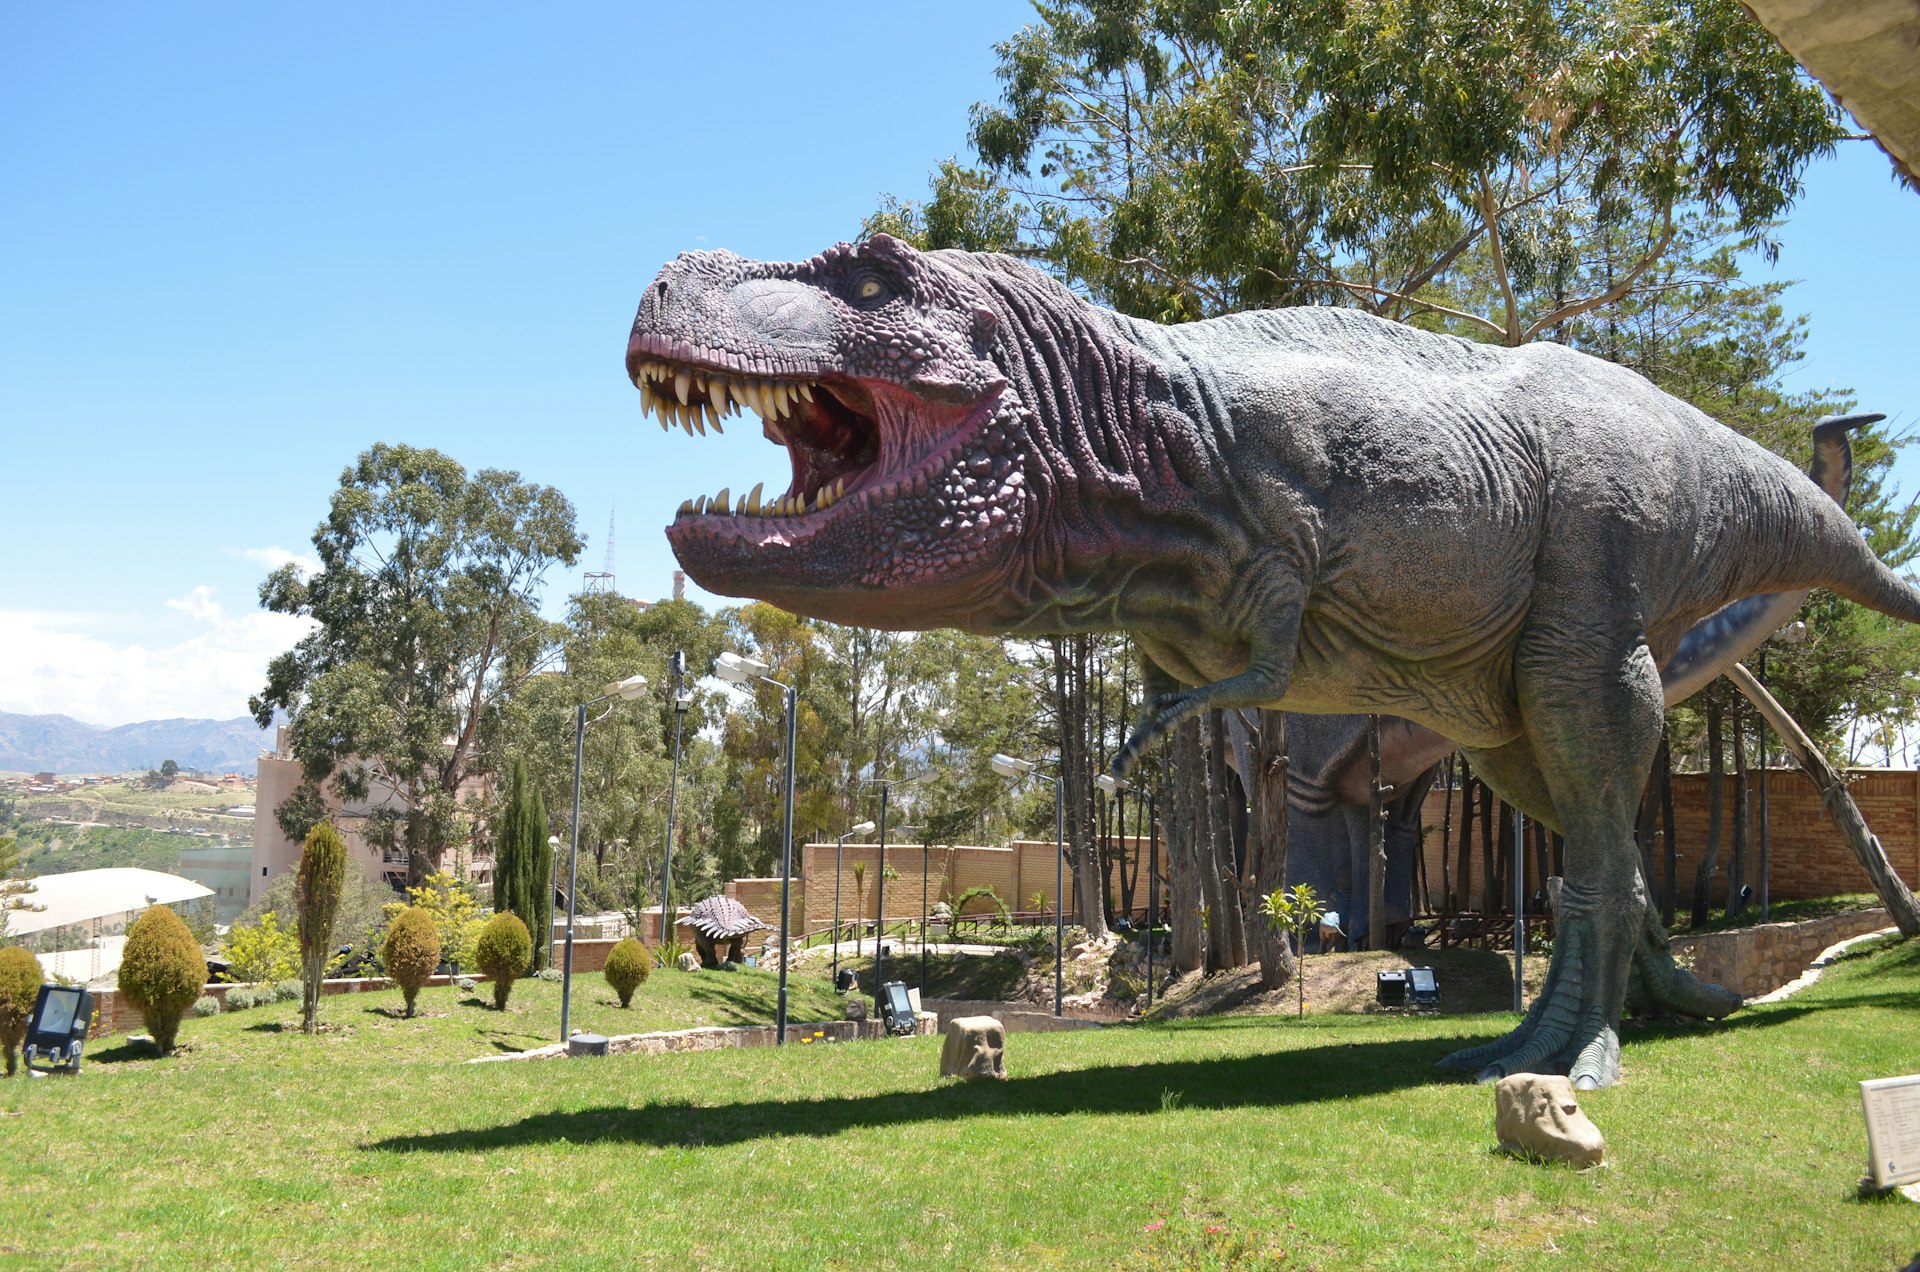 A huge dinosaur model roaring